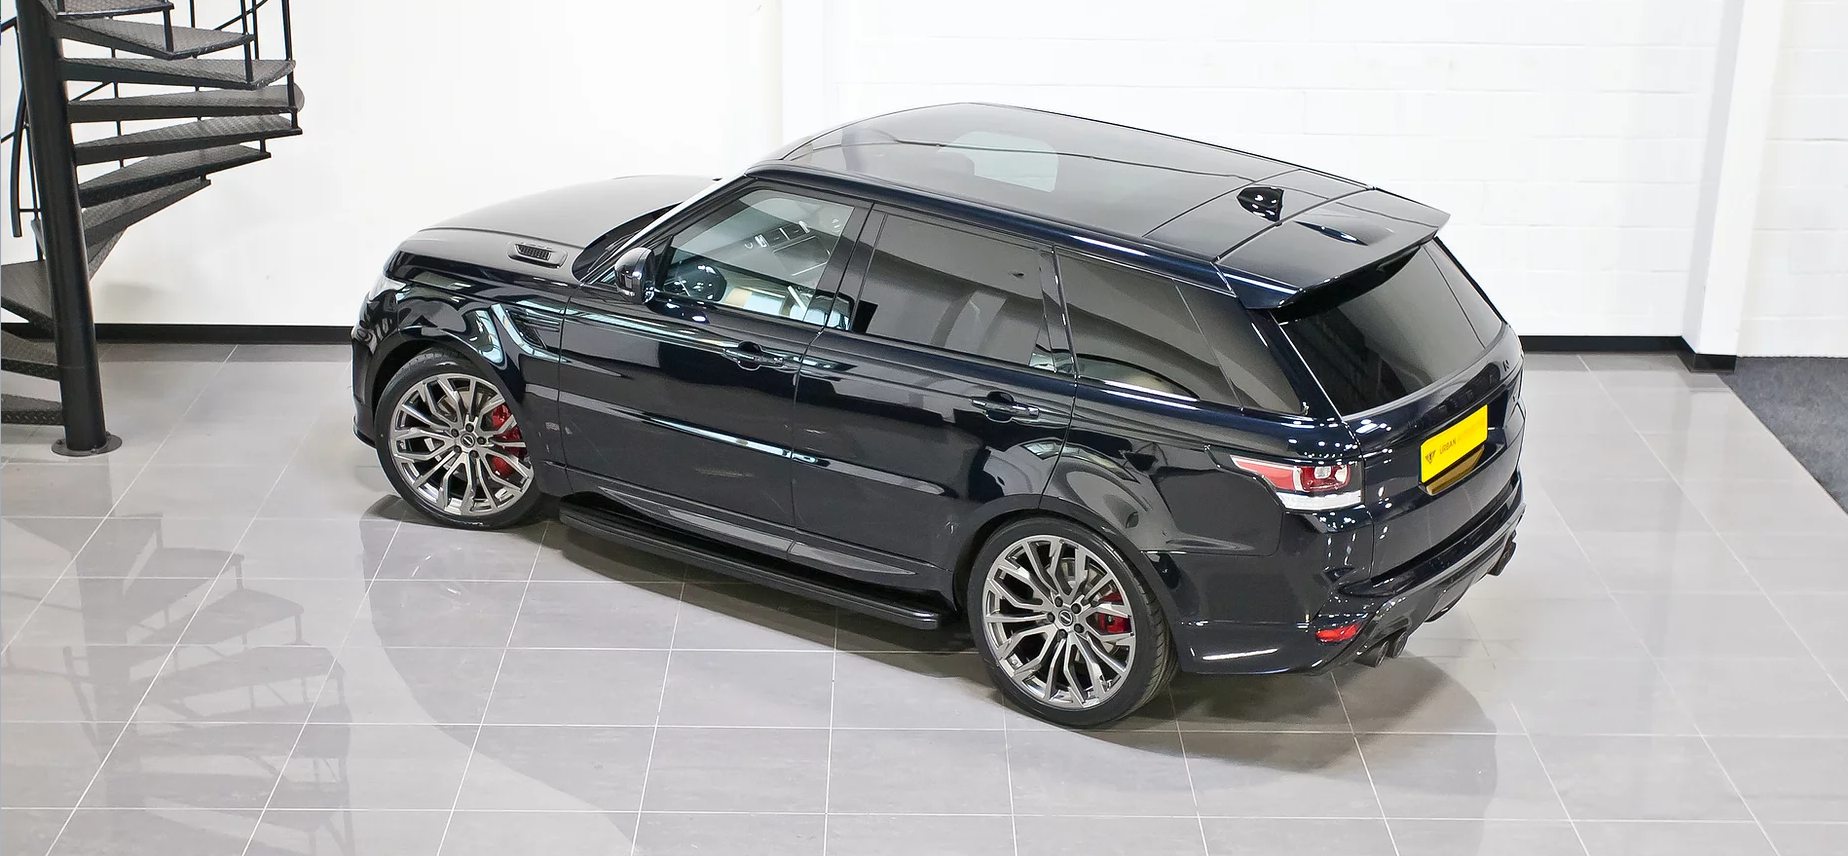 Urban  body kit for Range Rover Sport & SVR new model